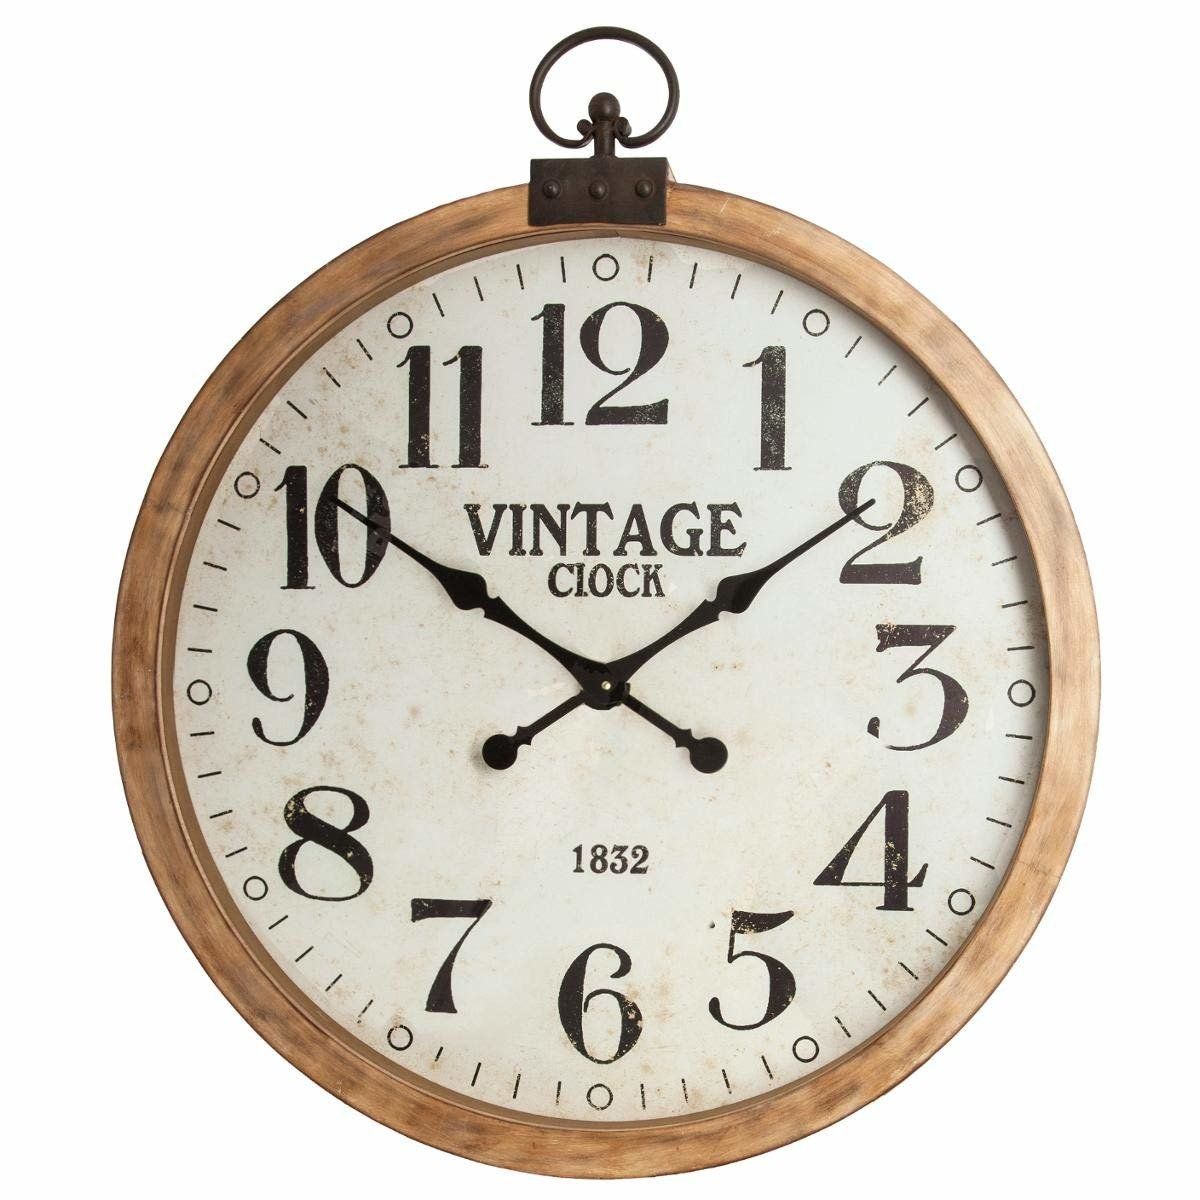 Atmosphera Nástěnné hodiny ve vintage stylu, dřevěné, průměr 74 cm, - EMAKO.CZ s.r.o.